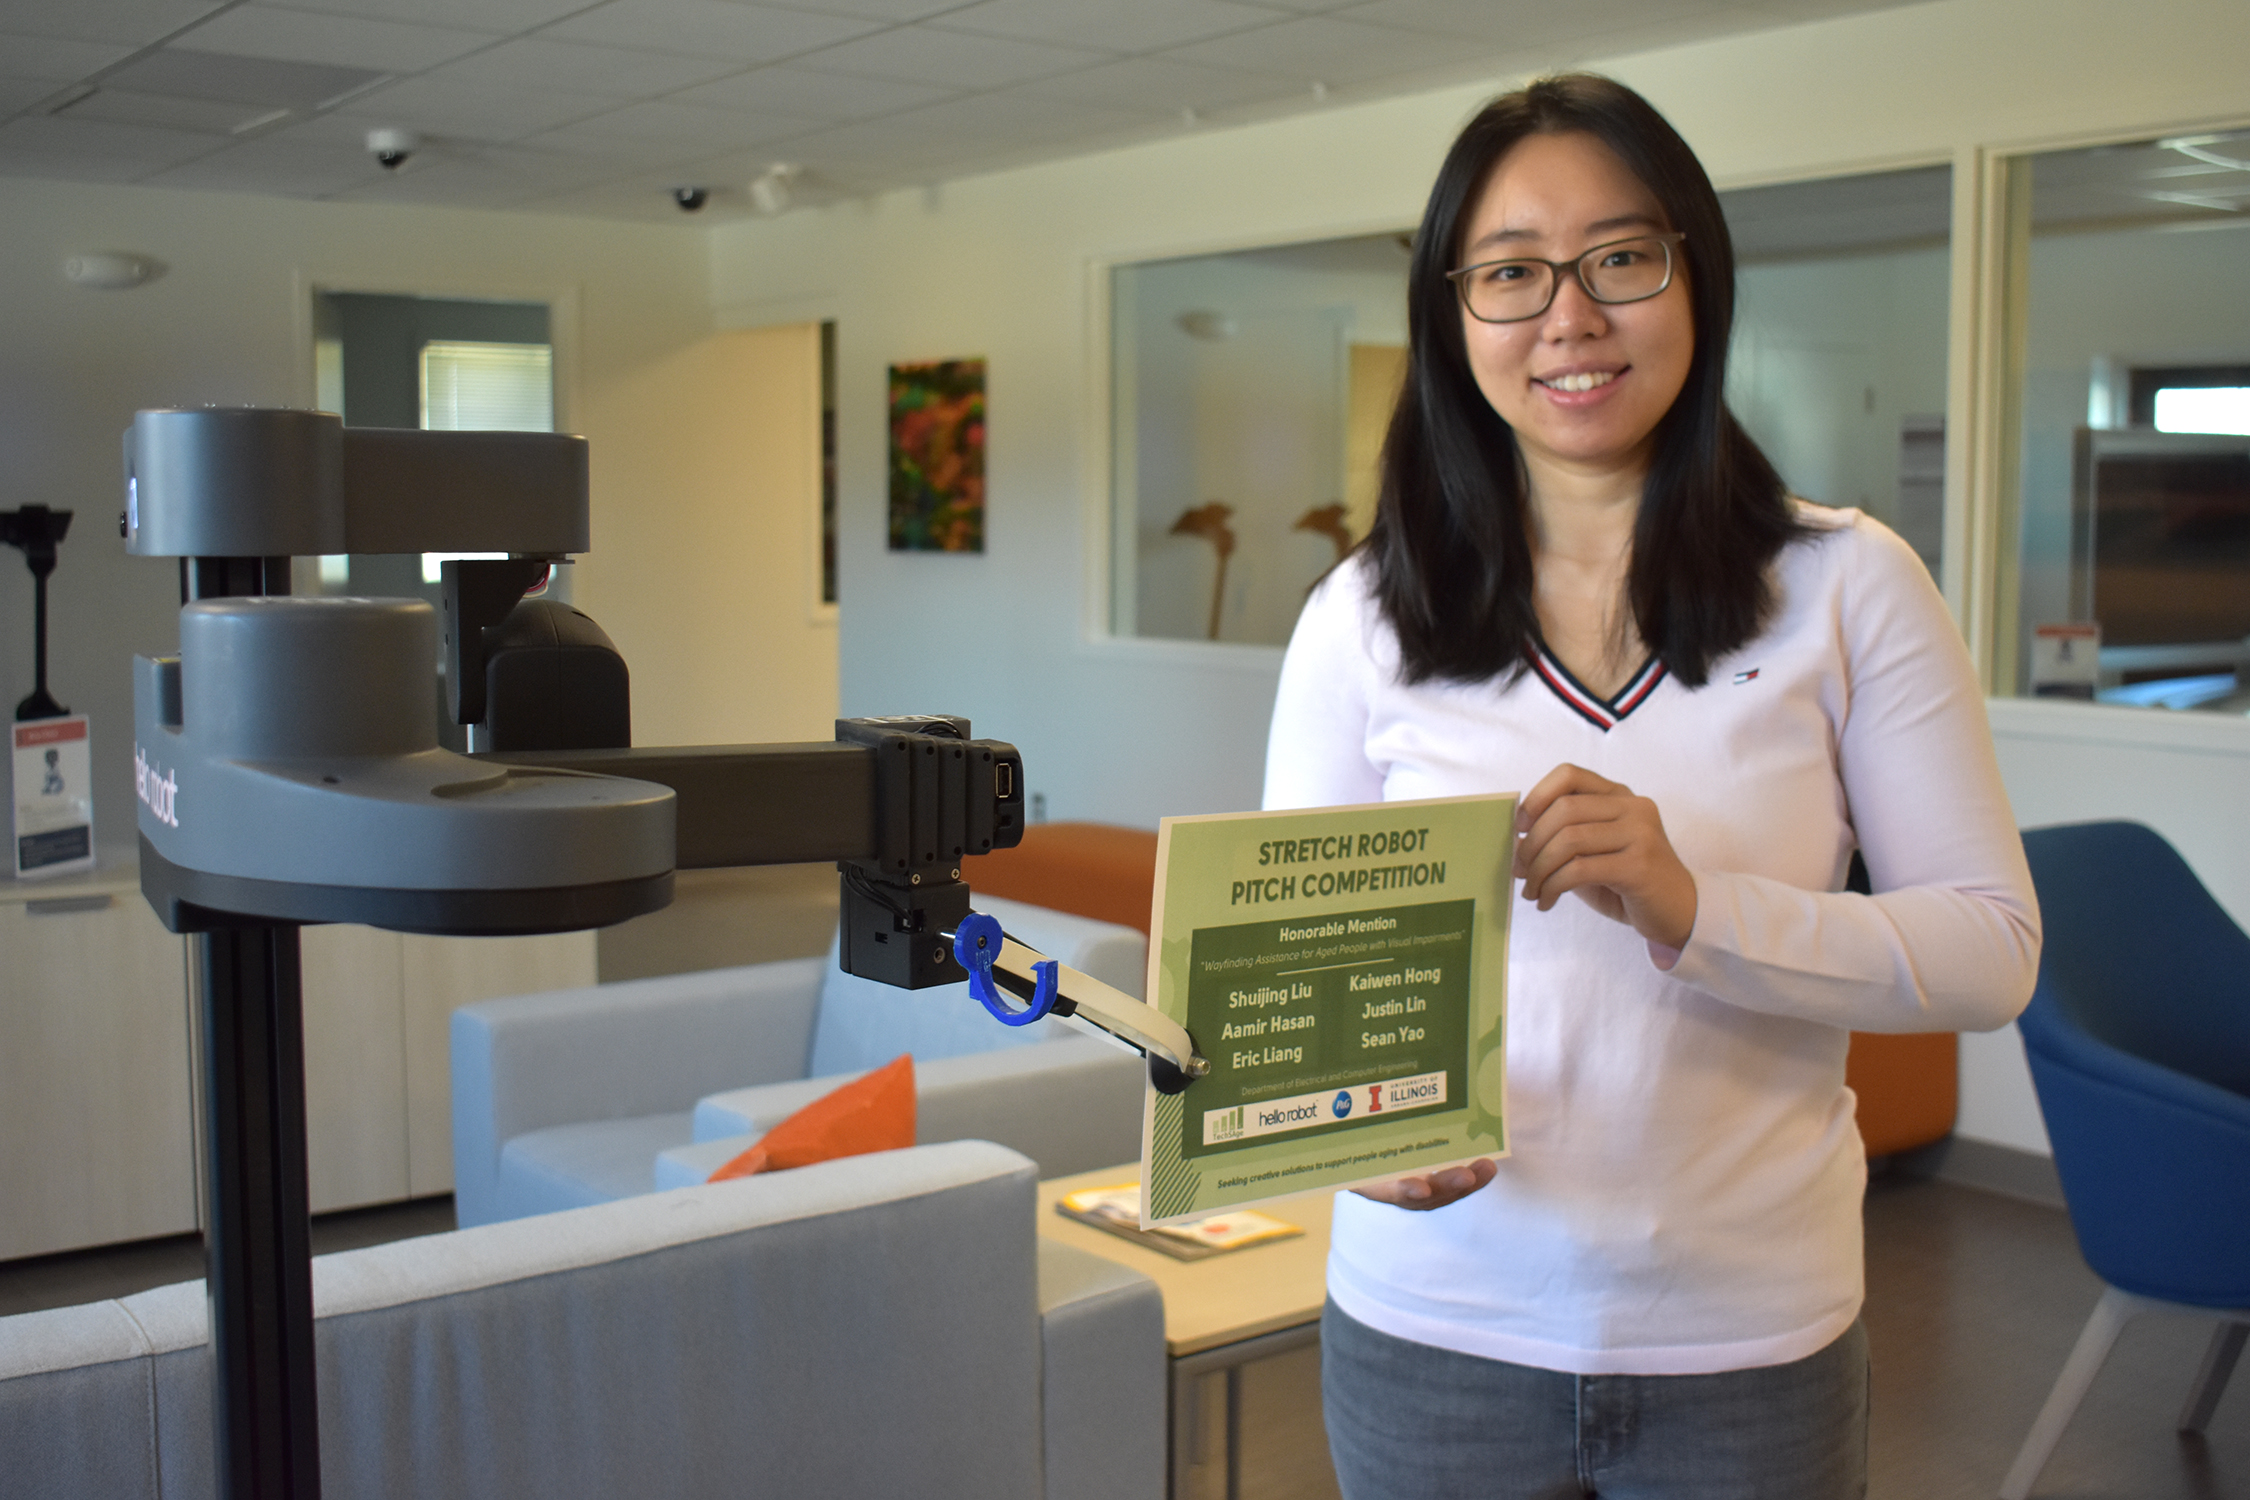 Shuijing Liu poses with Stretch Robot handing her an award certificate